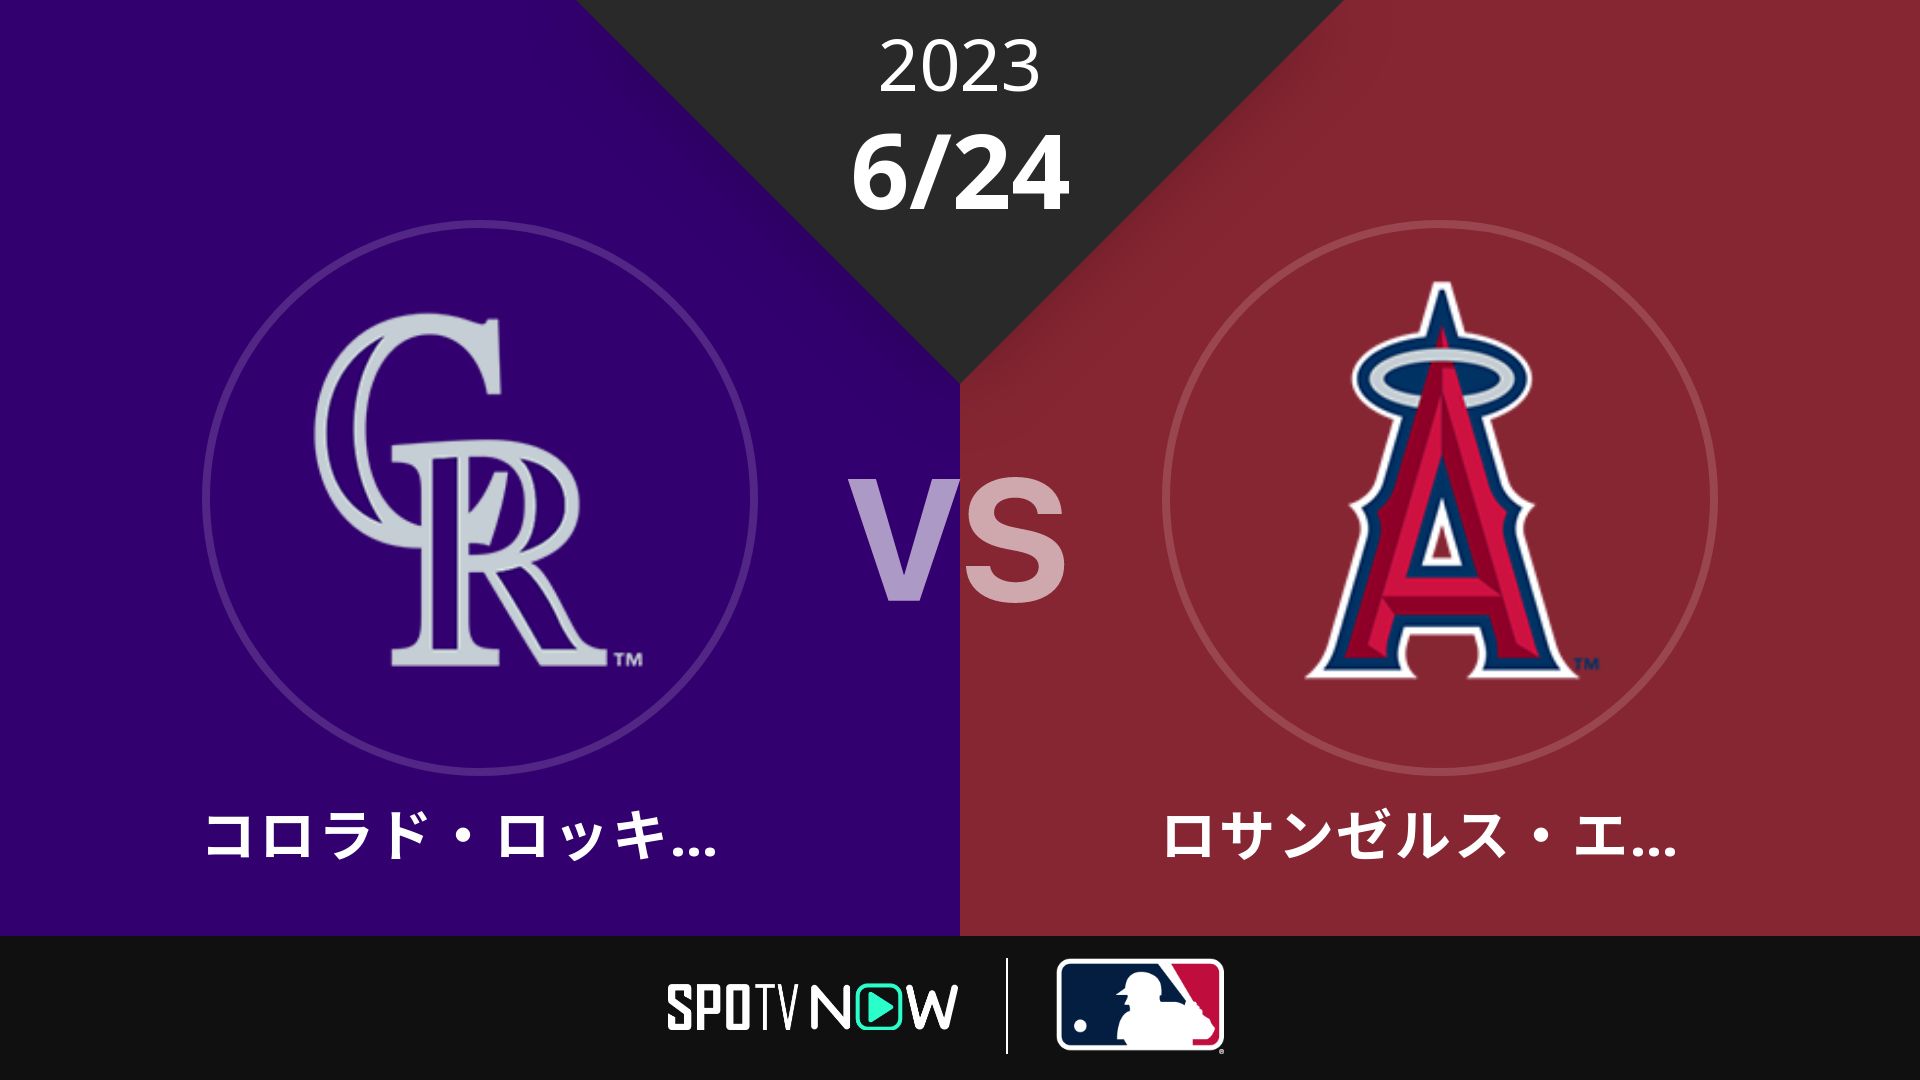 2023/6/24 ロッキーズ vs エンゼルス [MLB]